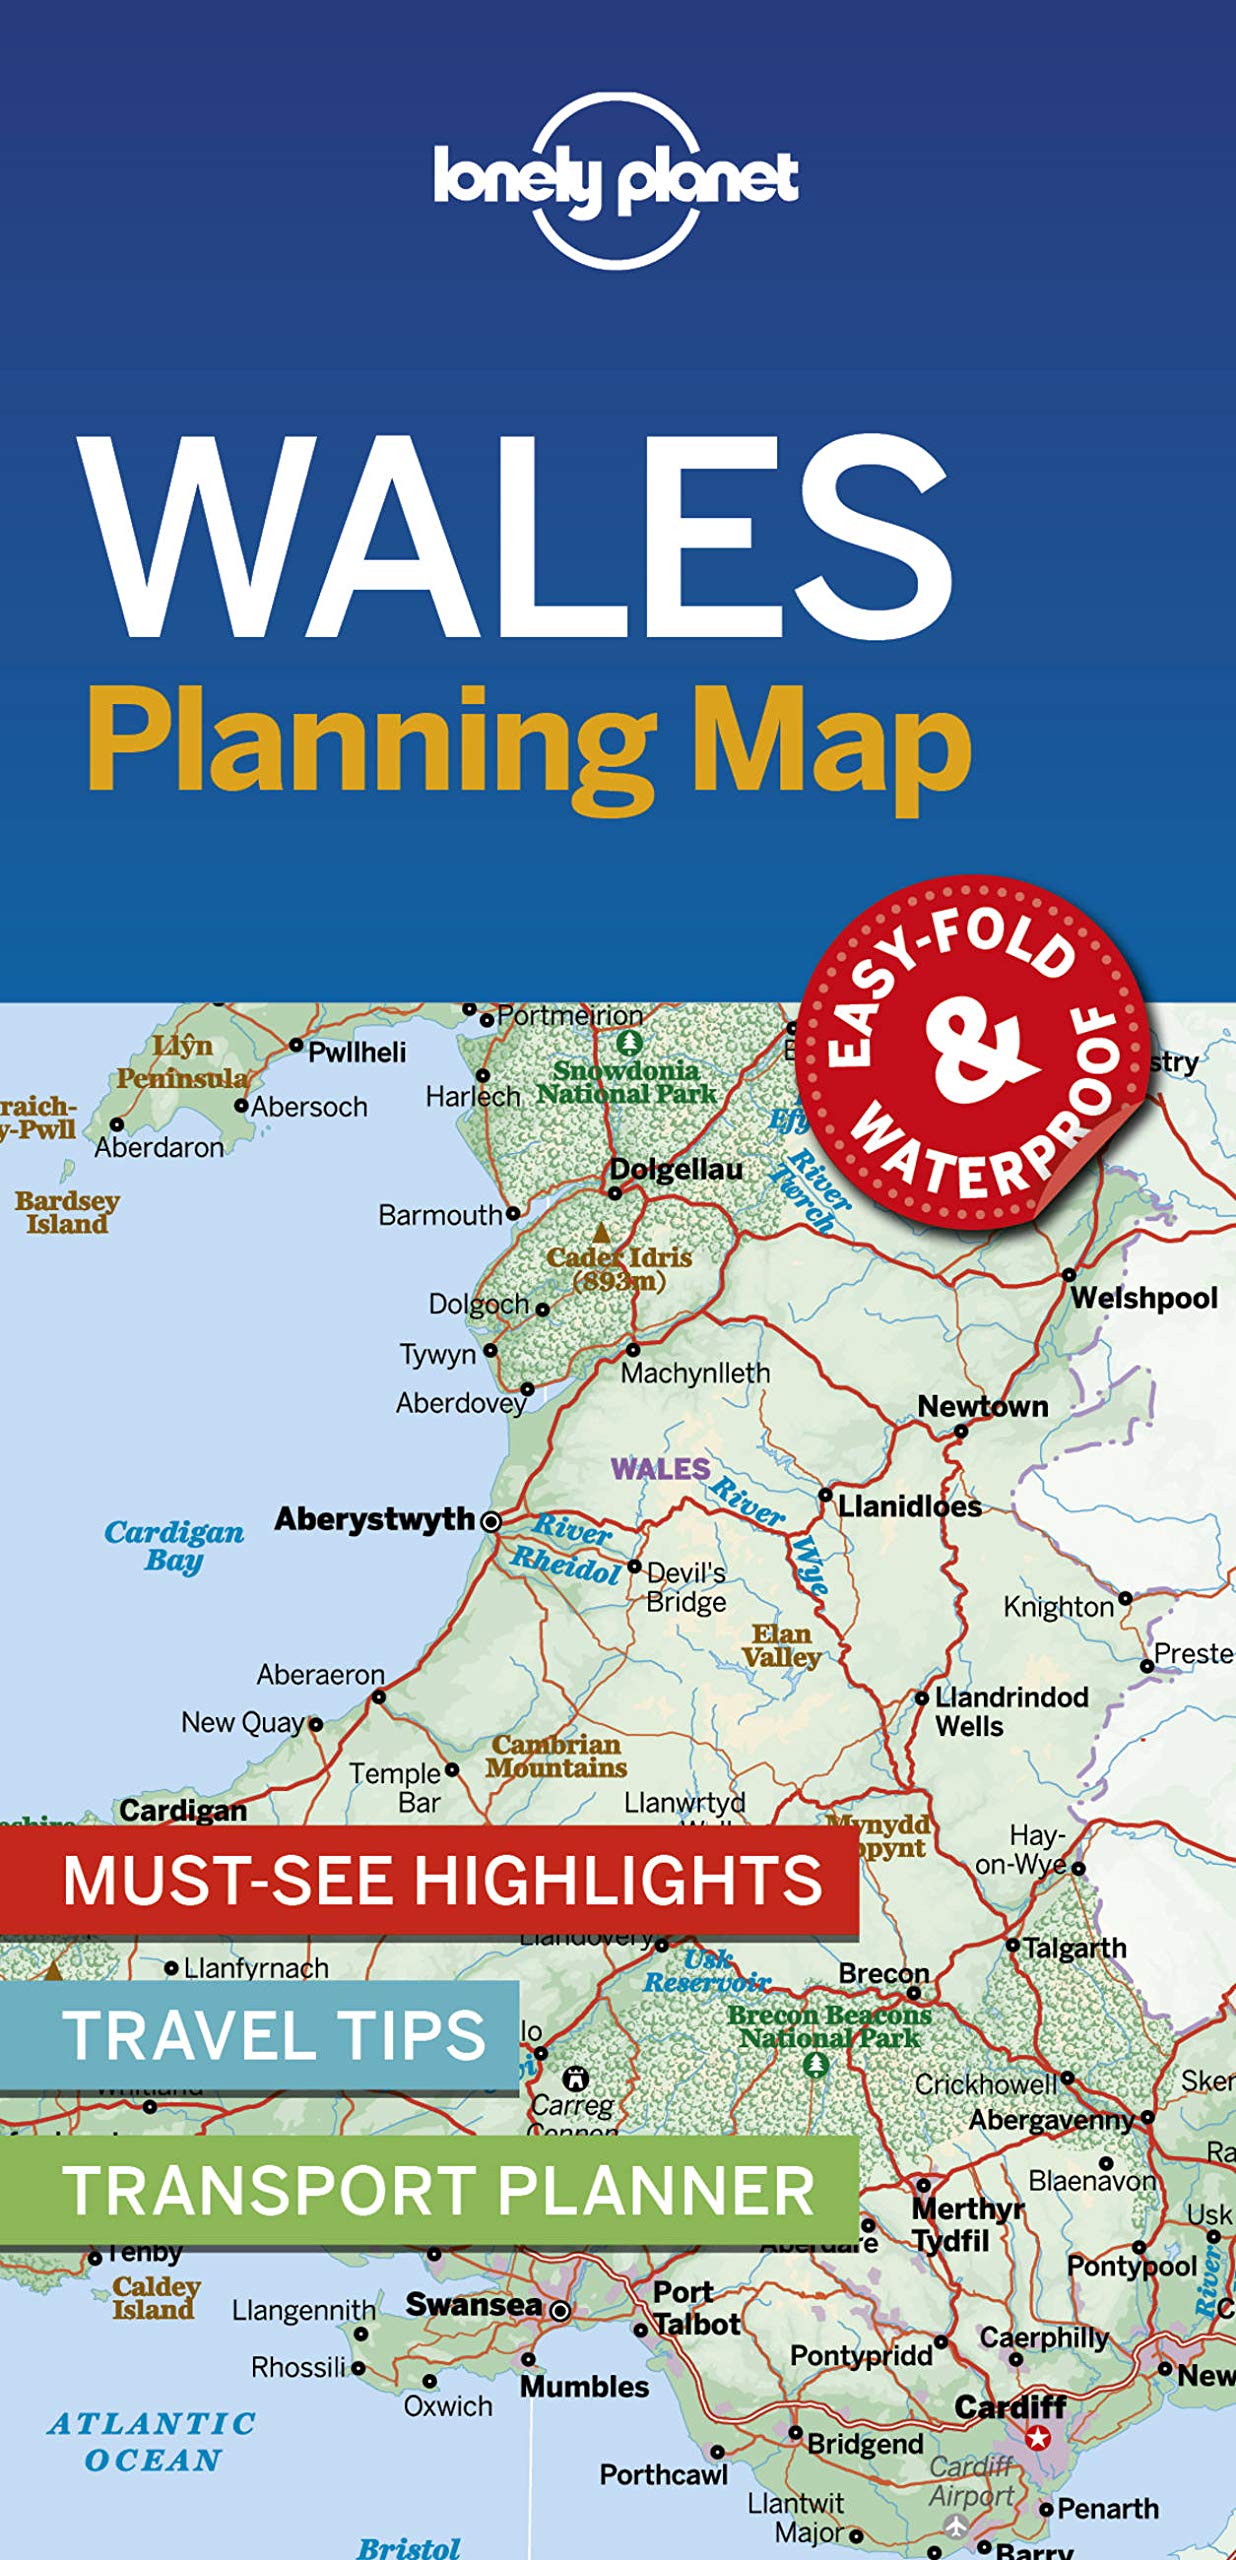 Online bestellen: Wegenkaart - landkaart Planning Map Wales | Lonely Planet